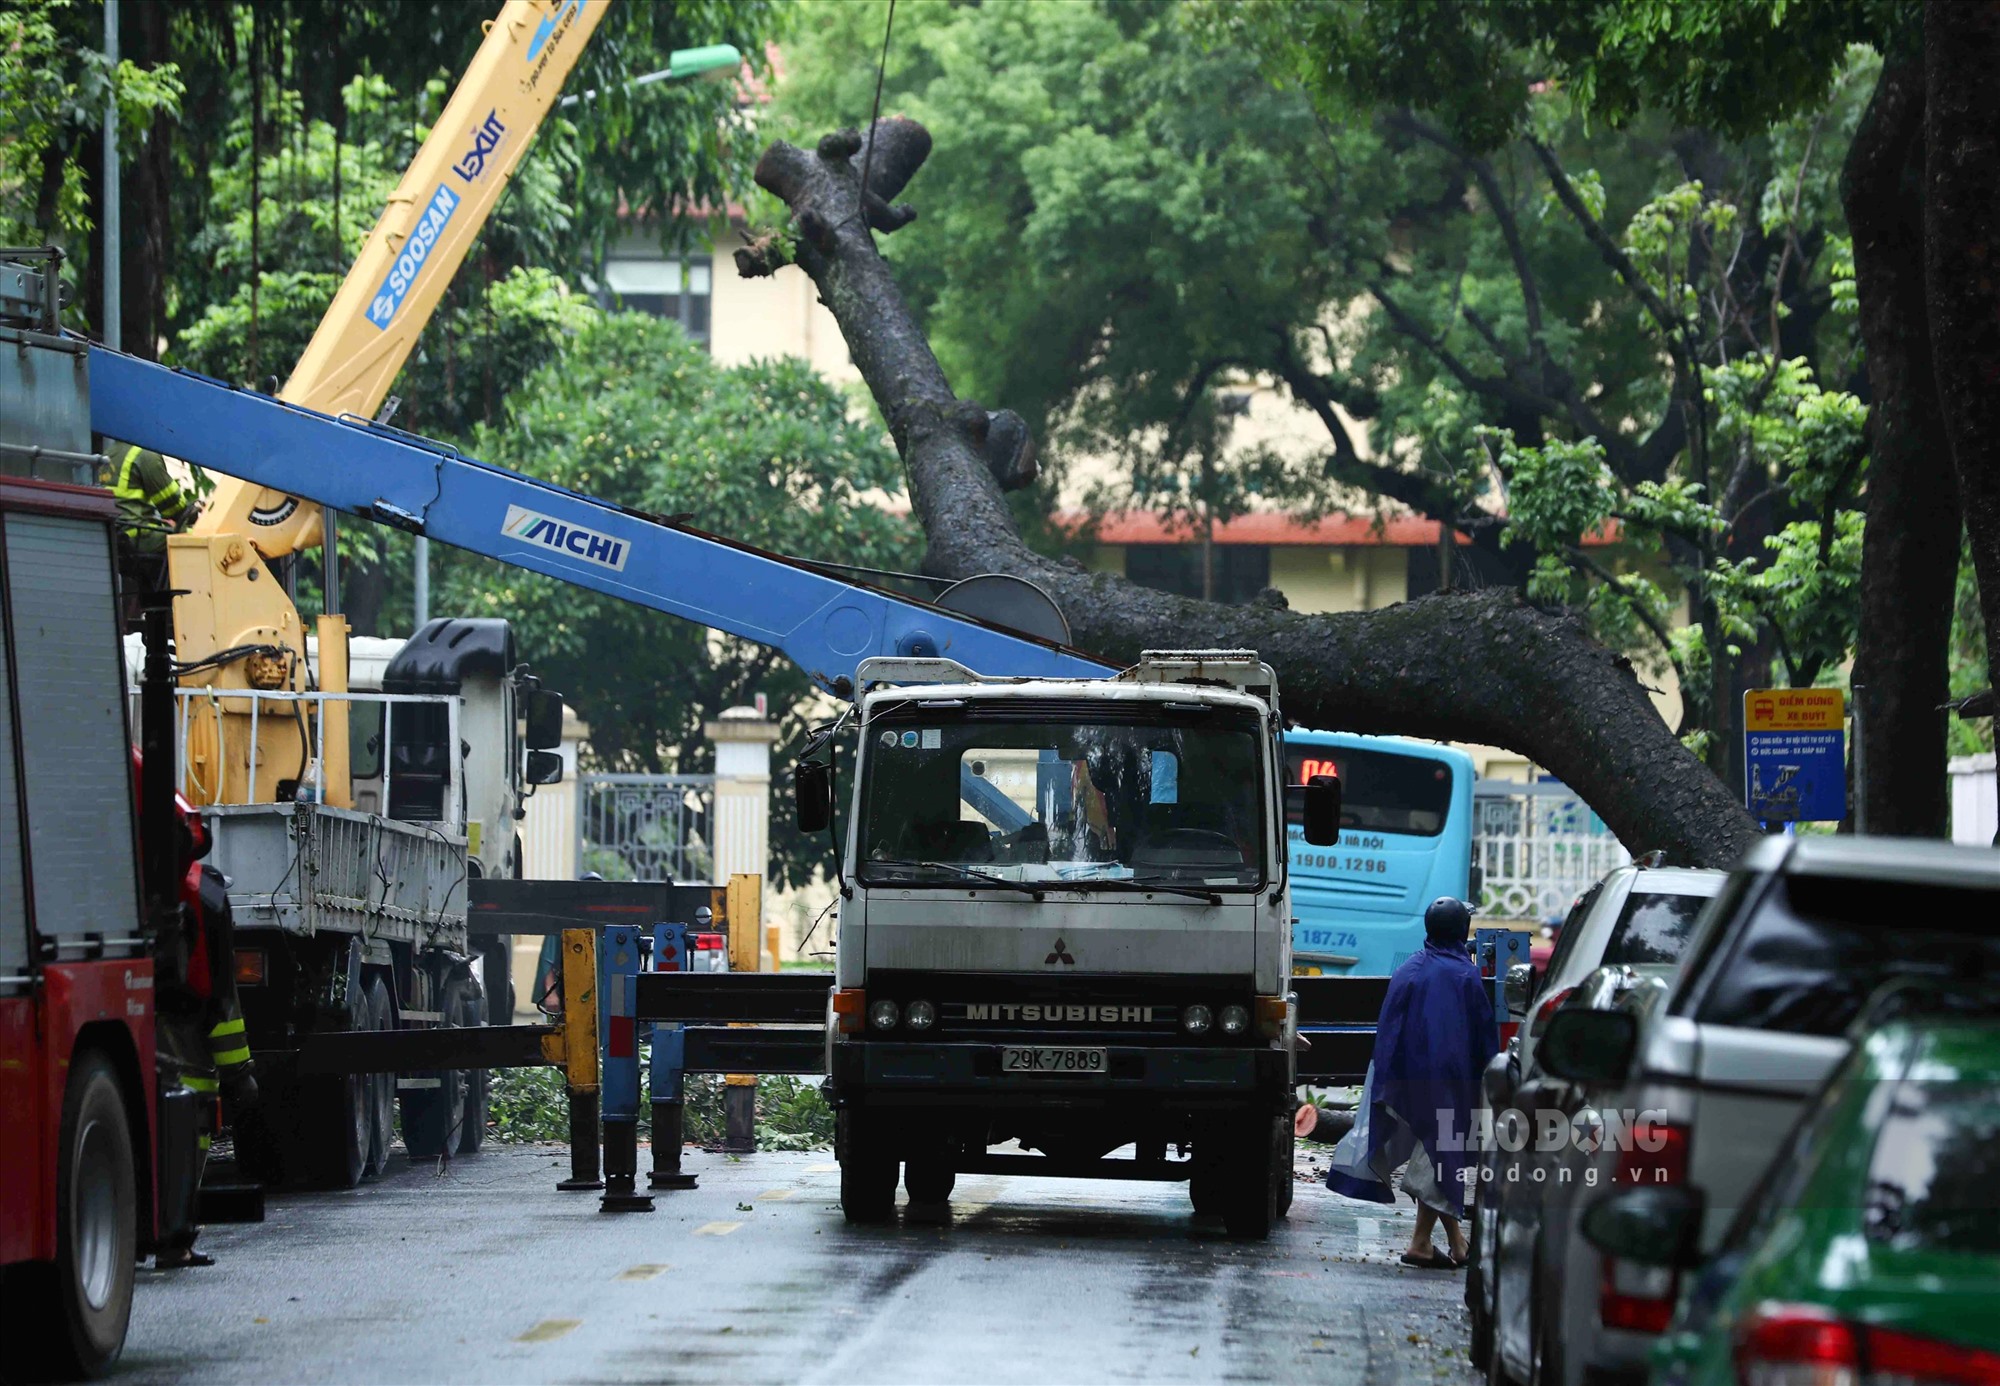 Đoạn phố Tăng Bạt Hổ phải tạm cấm xe trong thời gian lực lượng chức năng xử lý hiện trường vụ cây đổ.